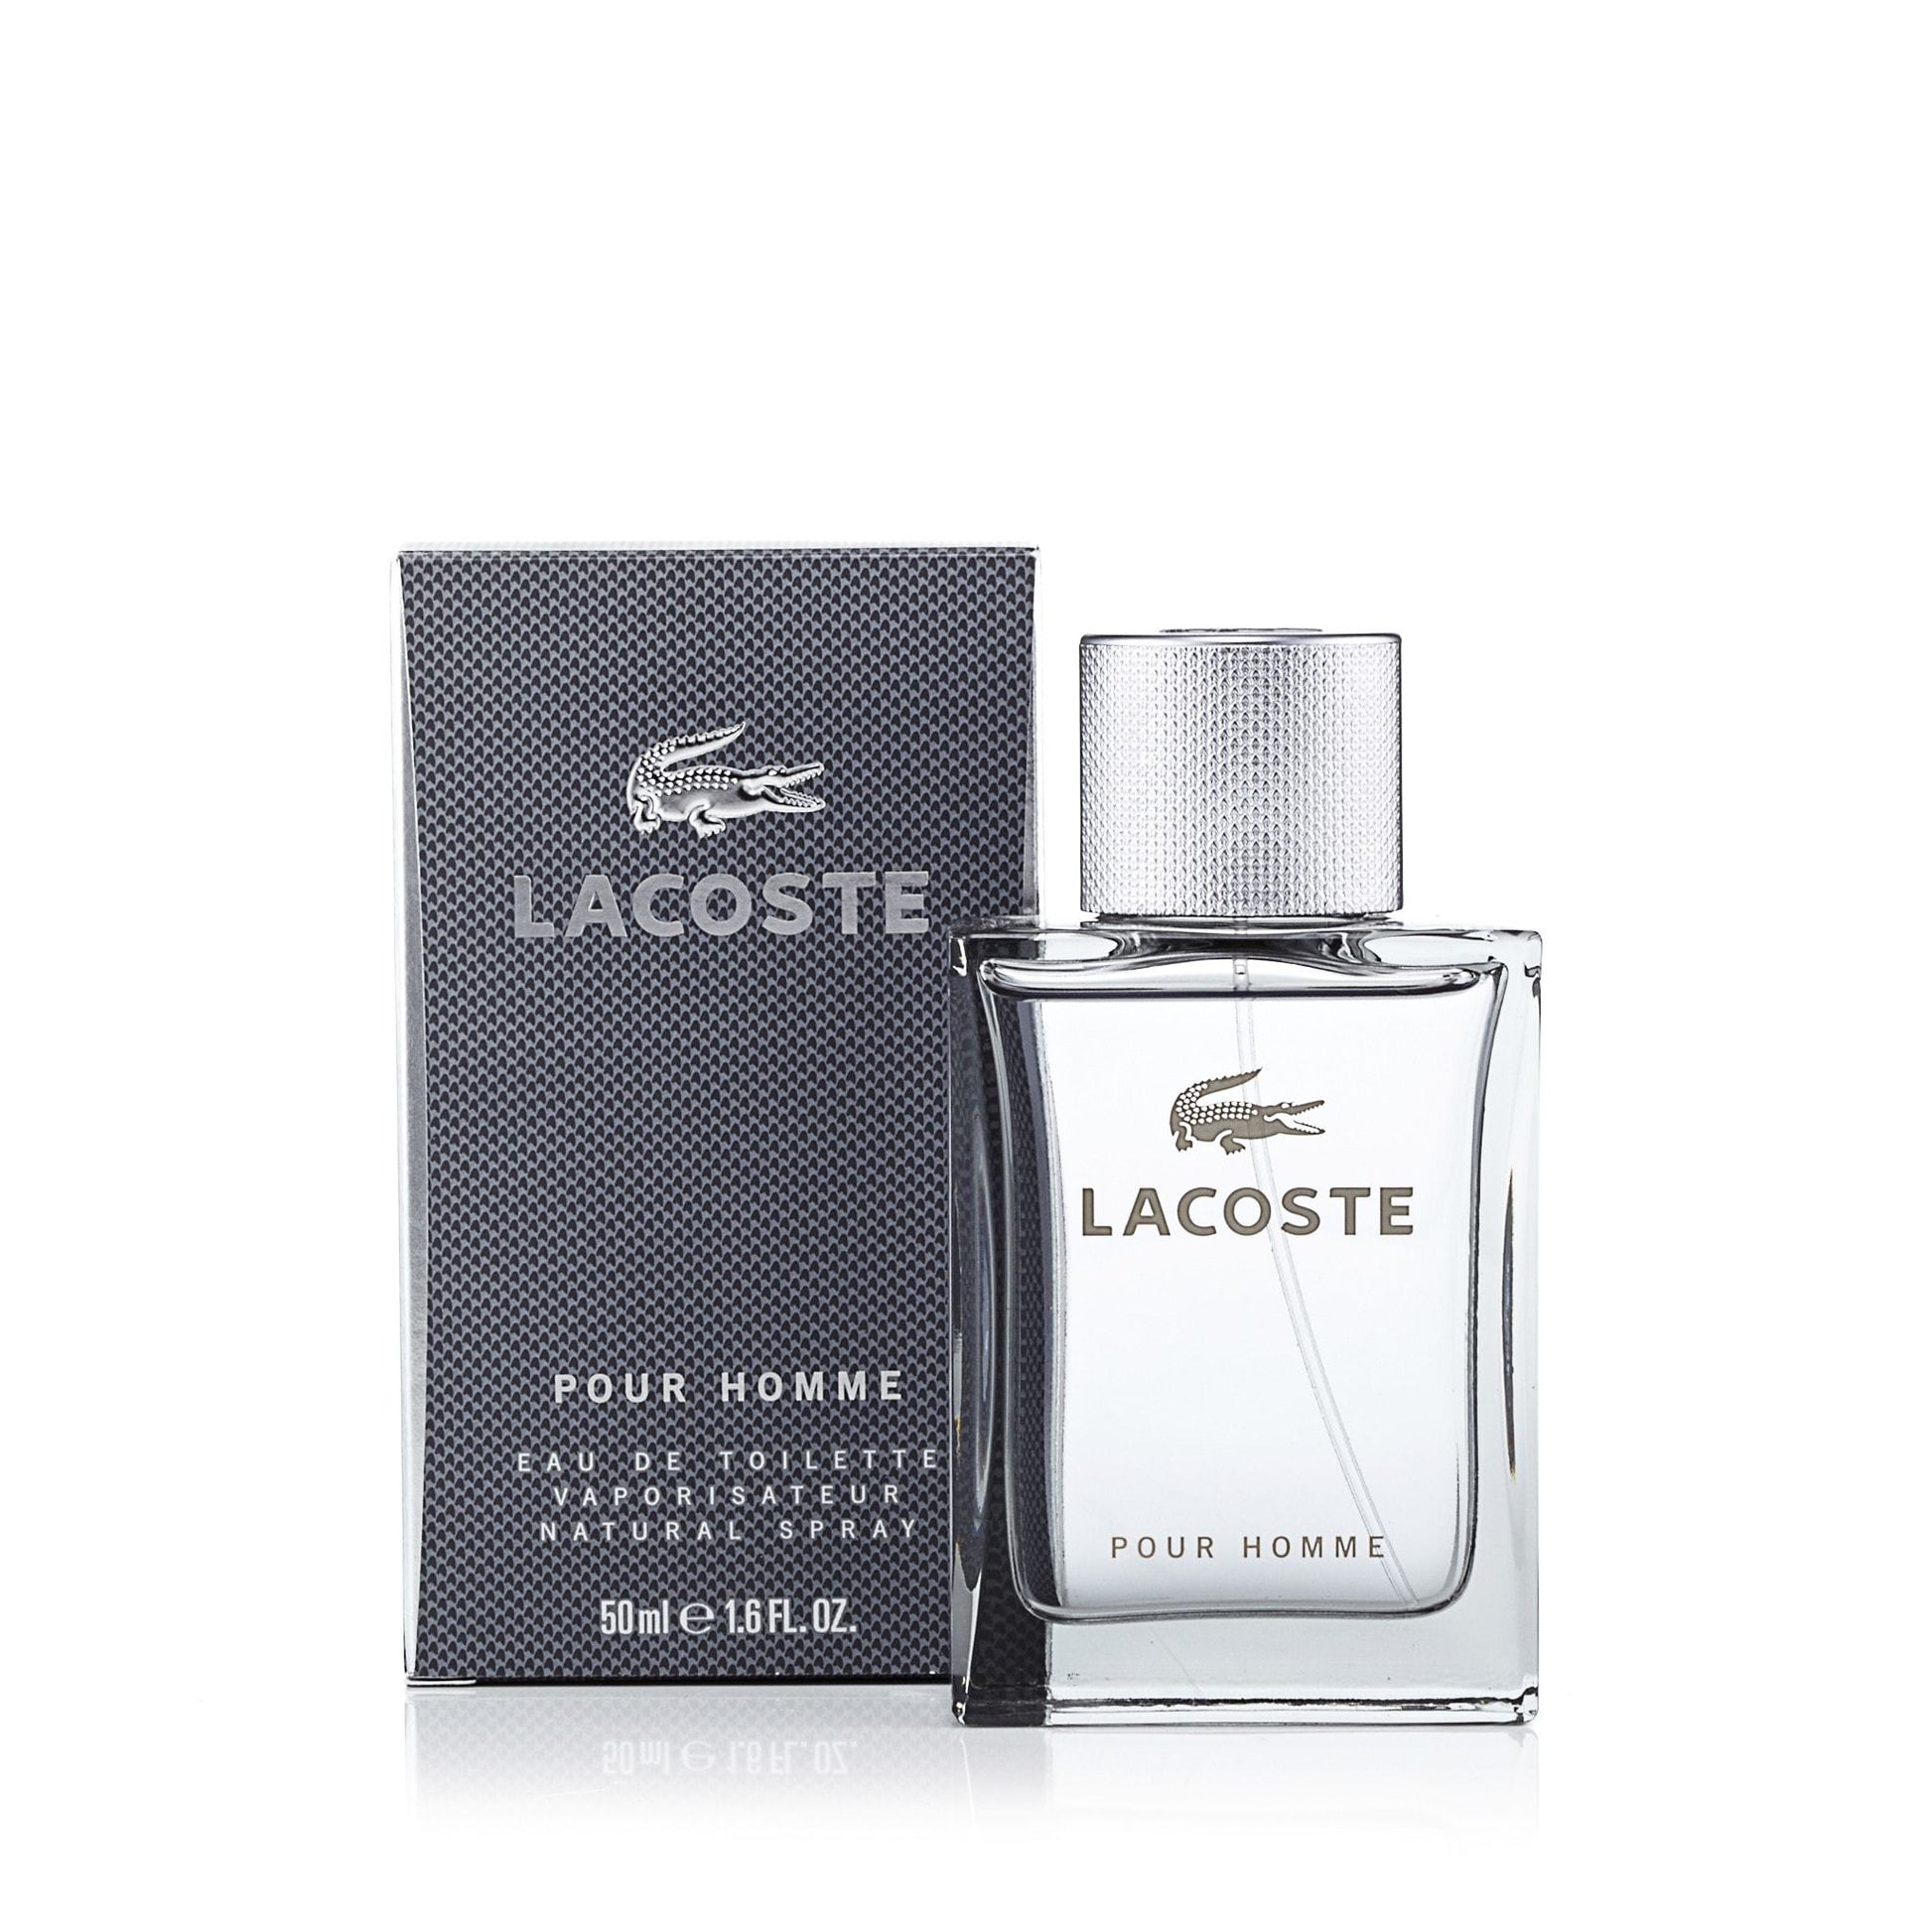 Lacoste Pour Homme Eau de Toilette Spray for Men by Lacoste, Product image 3